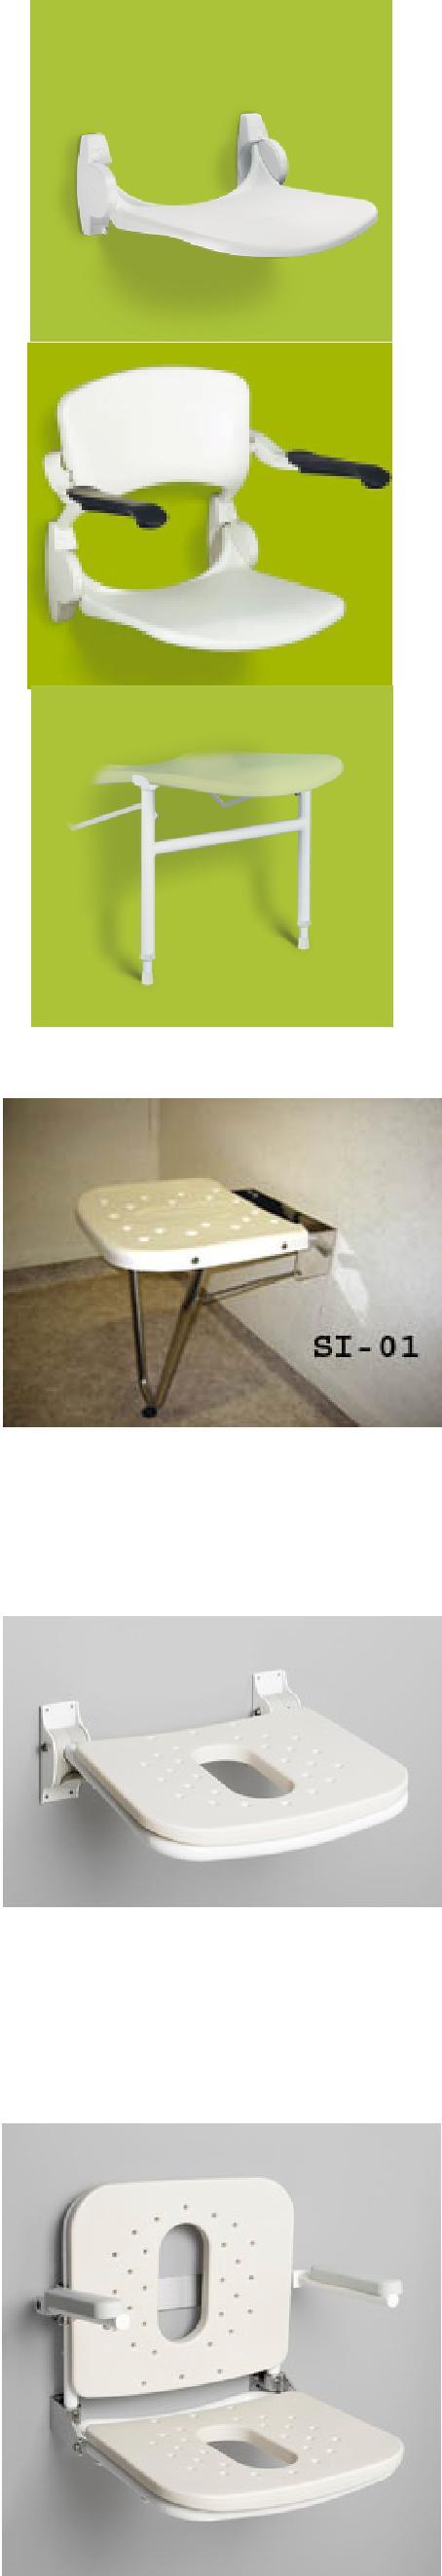 Seinäkiinnitteiset istuimet LINIDO-suihkuistuin Tukeva suihkuistuin pesuhuoneisiin, jossa on liikkumatilaa vähän. Muotoiltu, suuri istuin (45x40cm) antaa hyvän tuen.